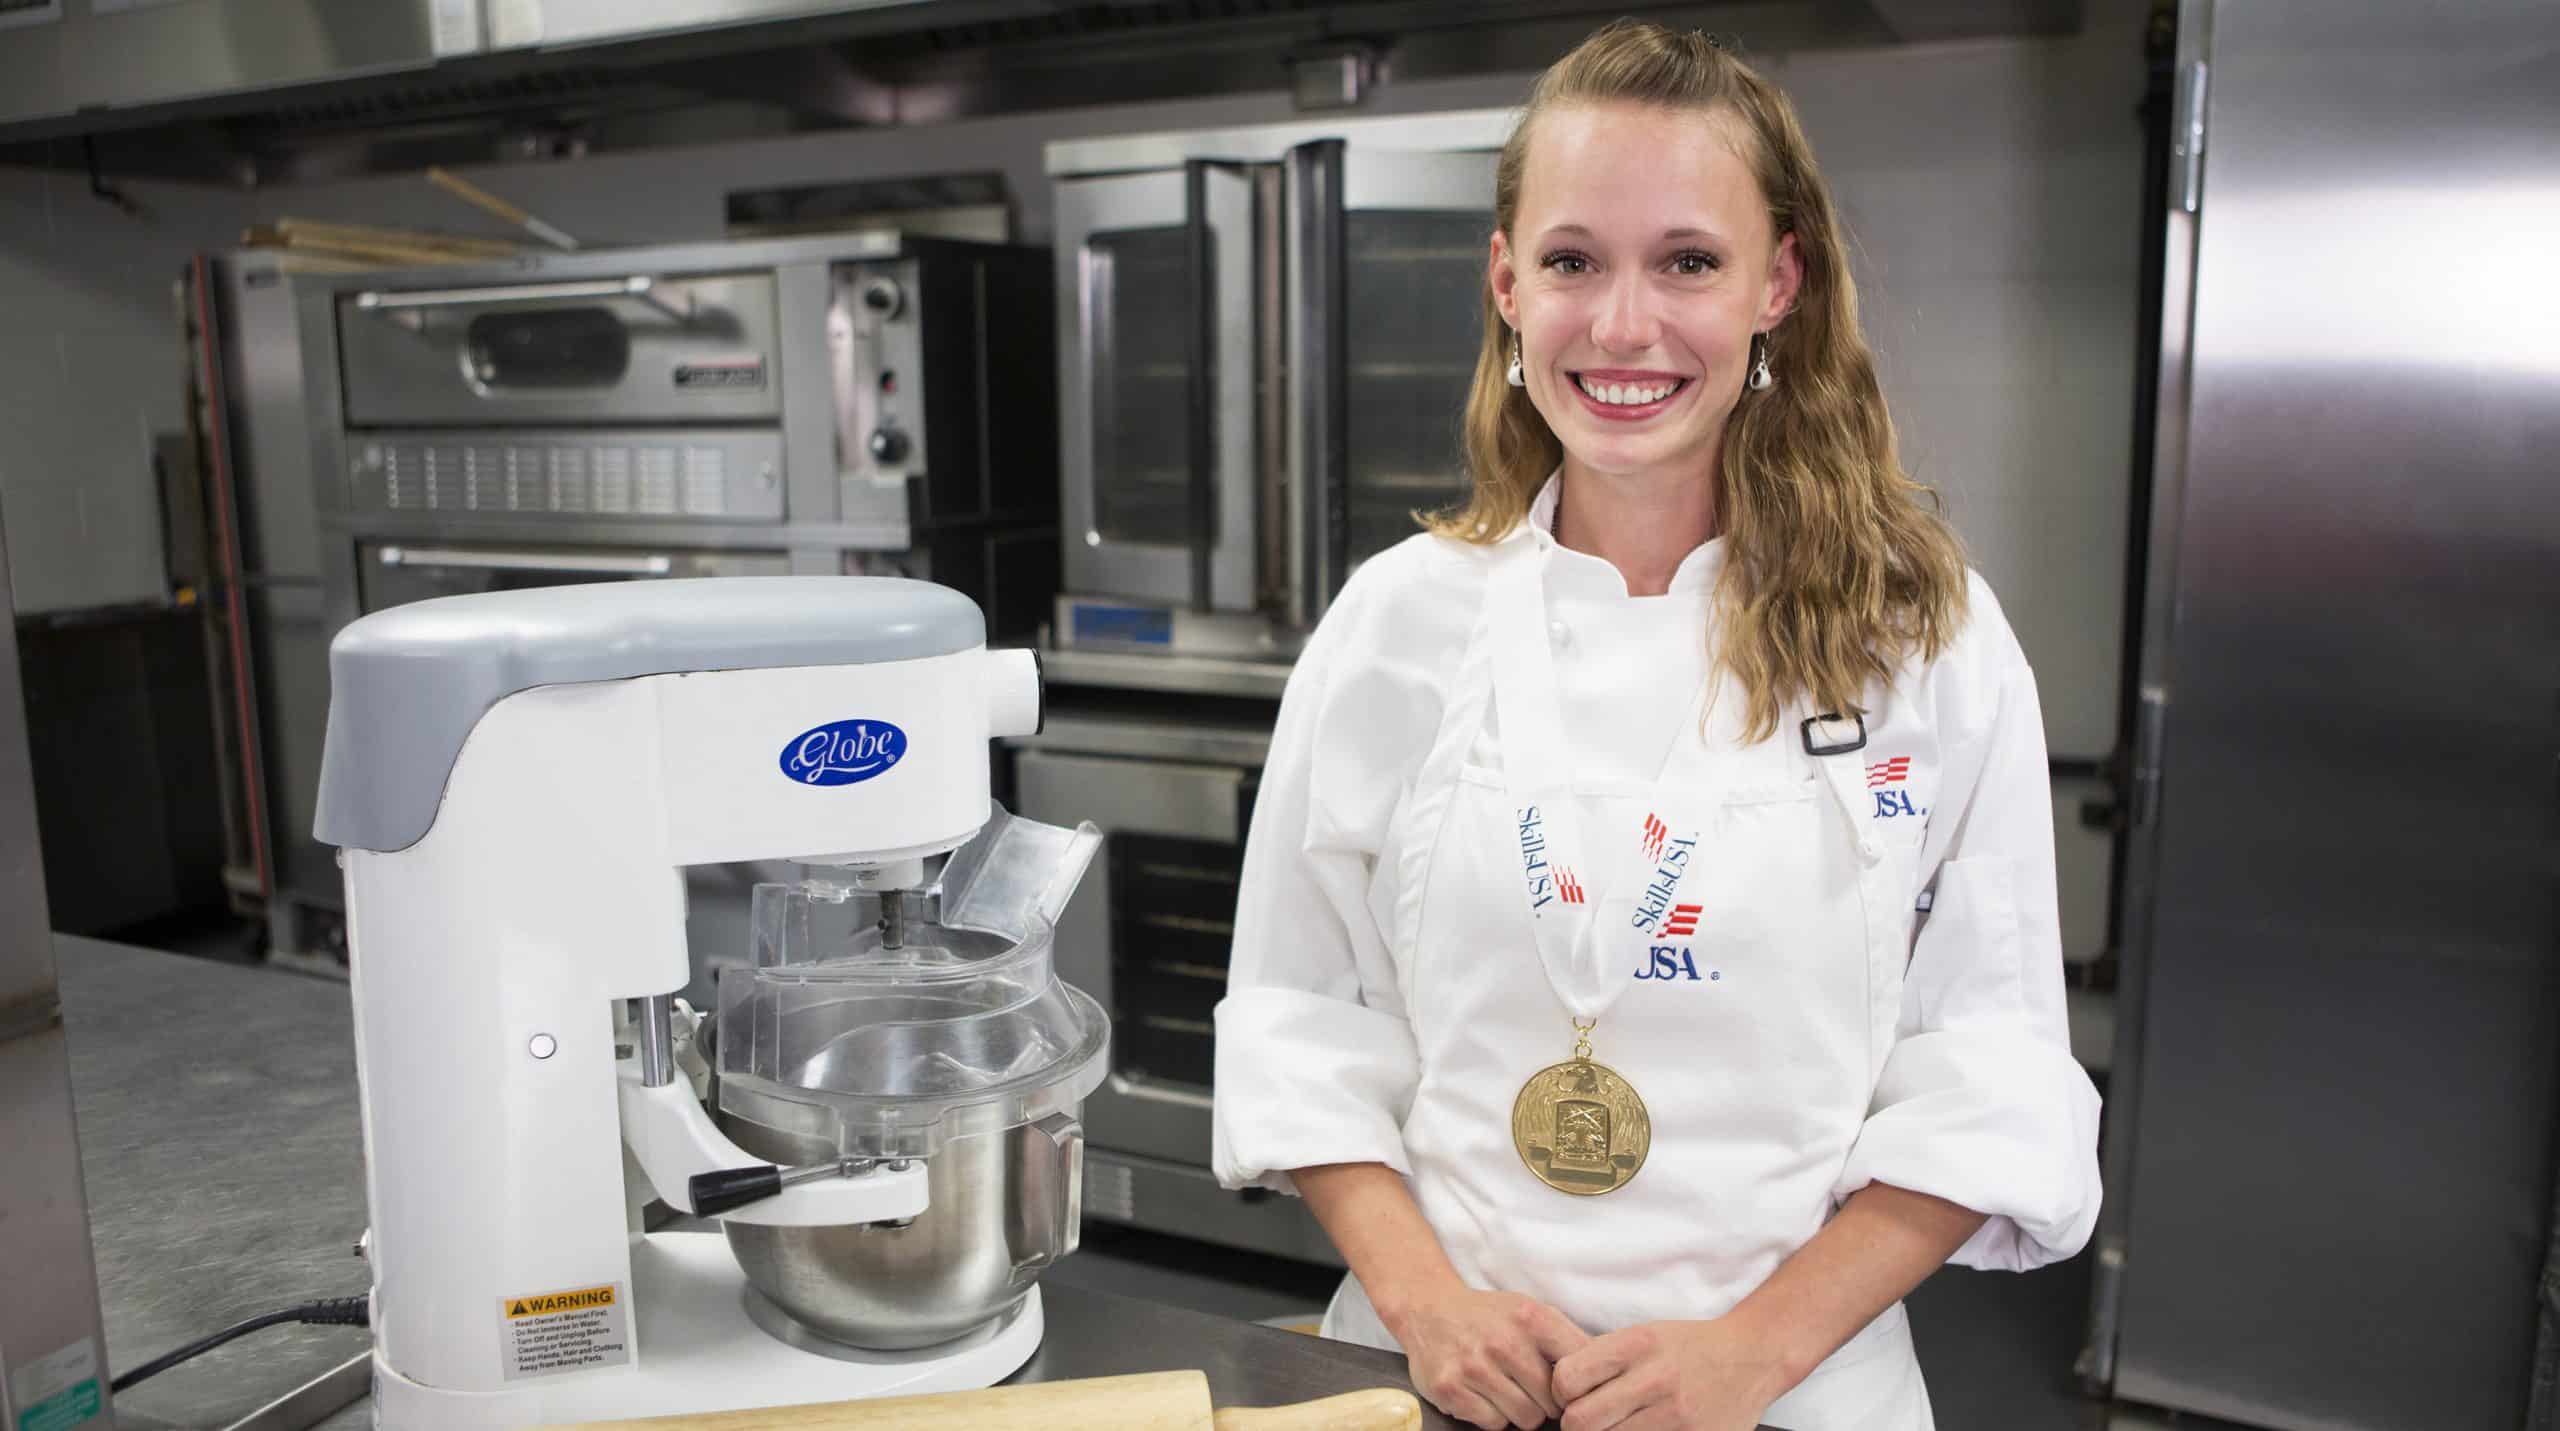 Chantal Cheevers Skills USA Culinary National Champion Baking